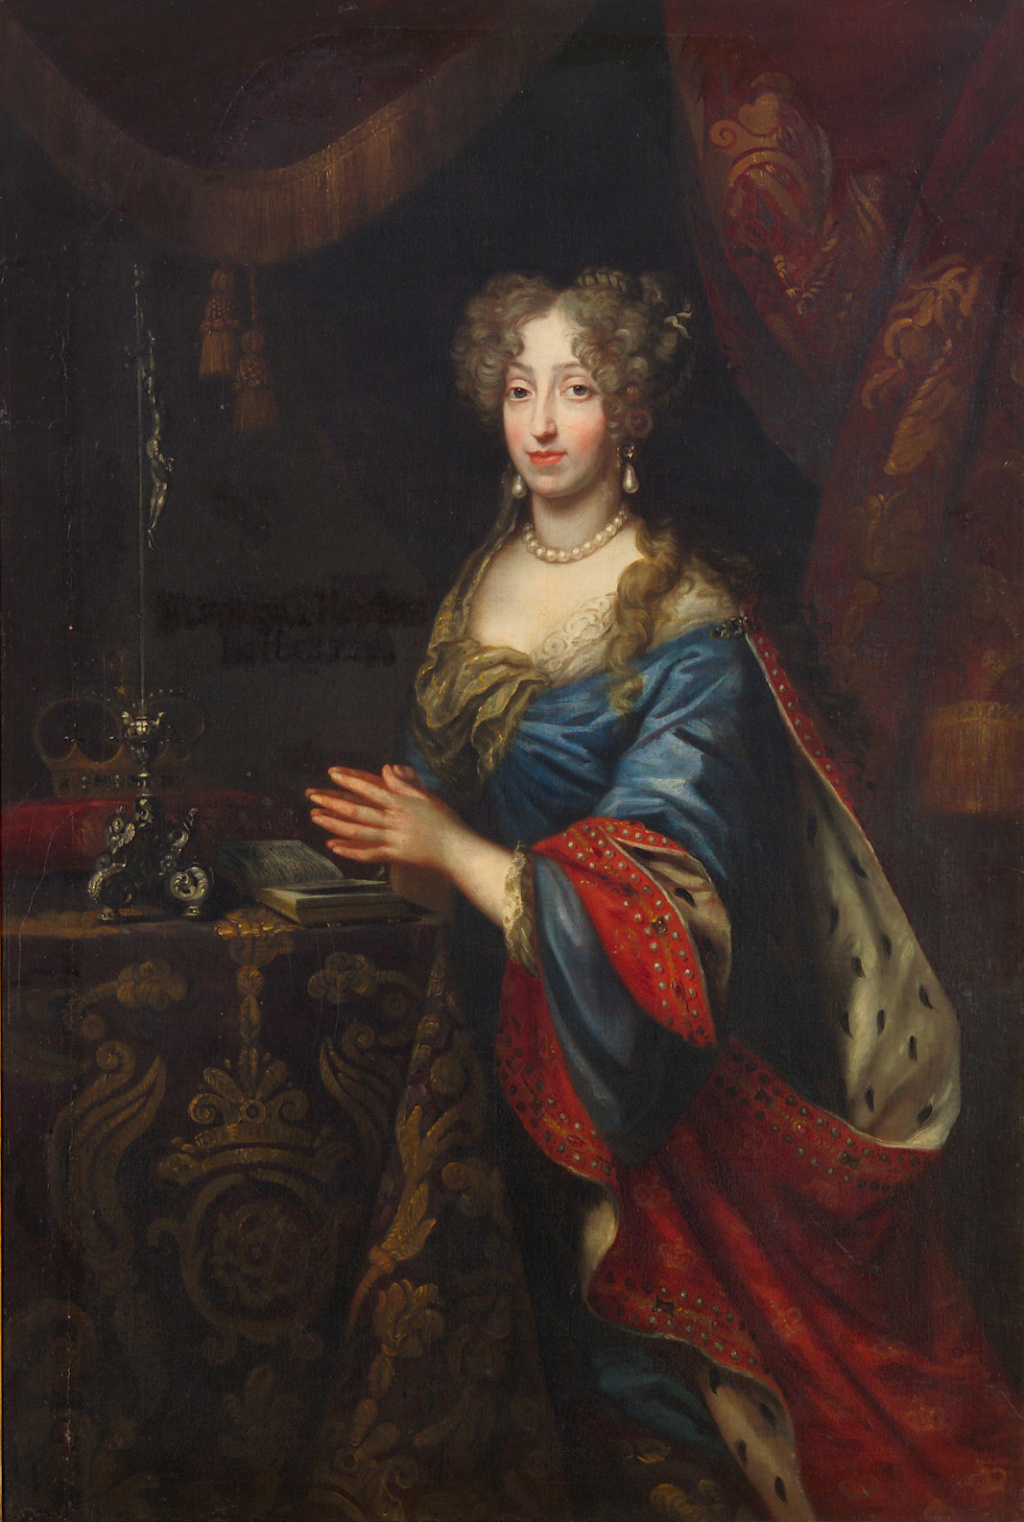 17 décembre 1697: Décès d'Éléonore Marie Josèphe d'Autriche Gbhzjl13